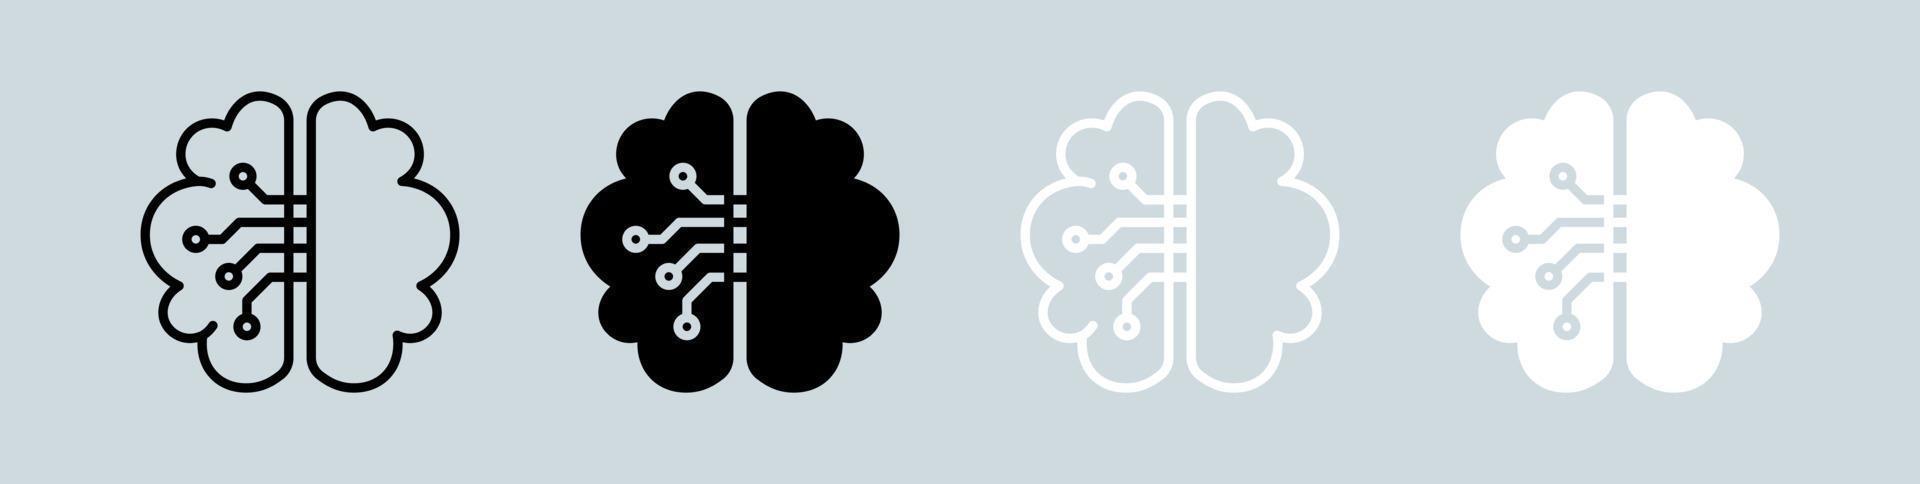 hersenen icoon in zwarte en witte kleuren. menselijke geest tekenen vector illustratie.